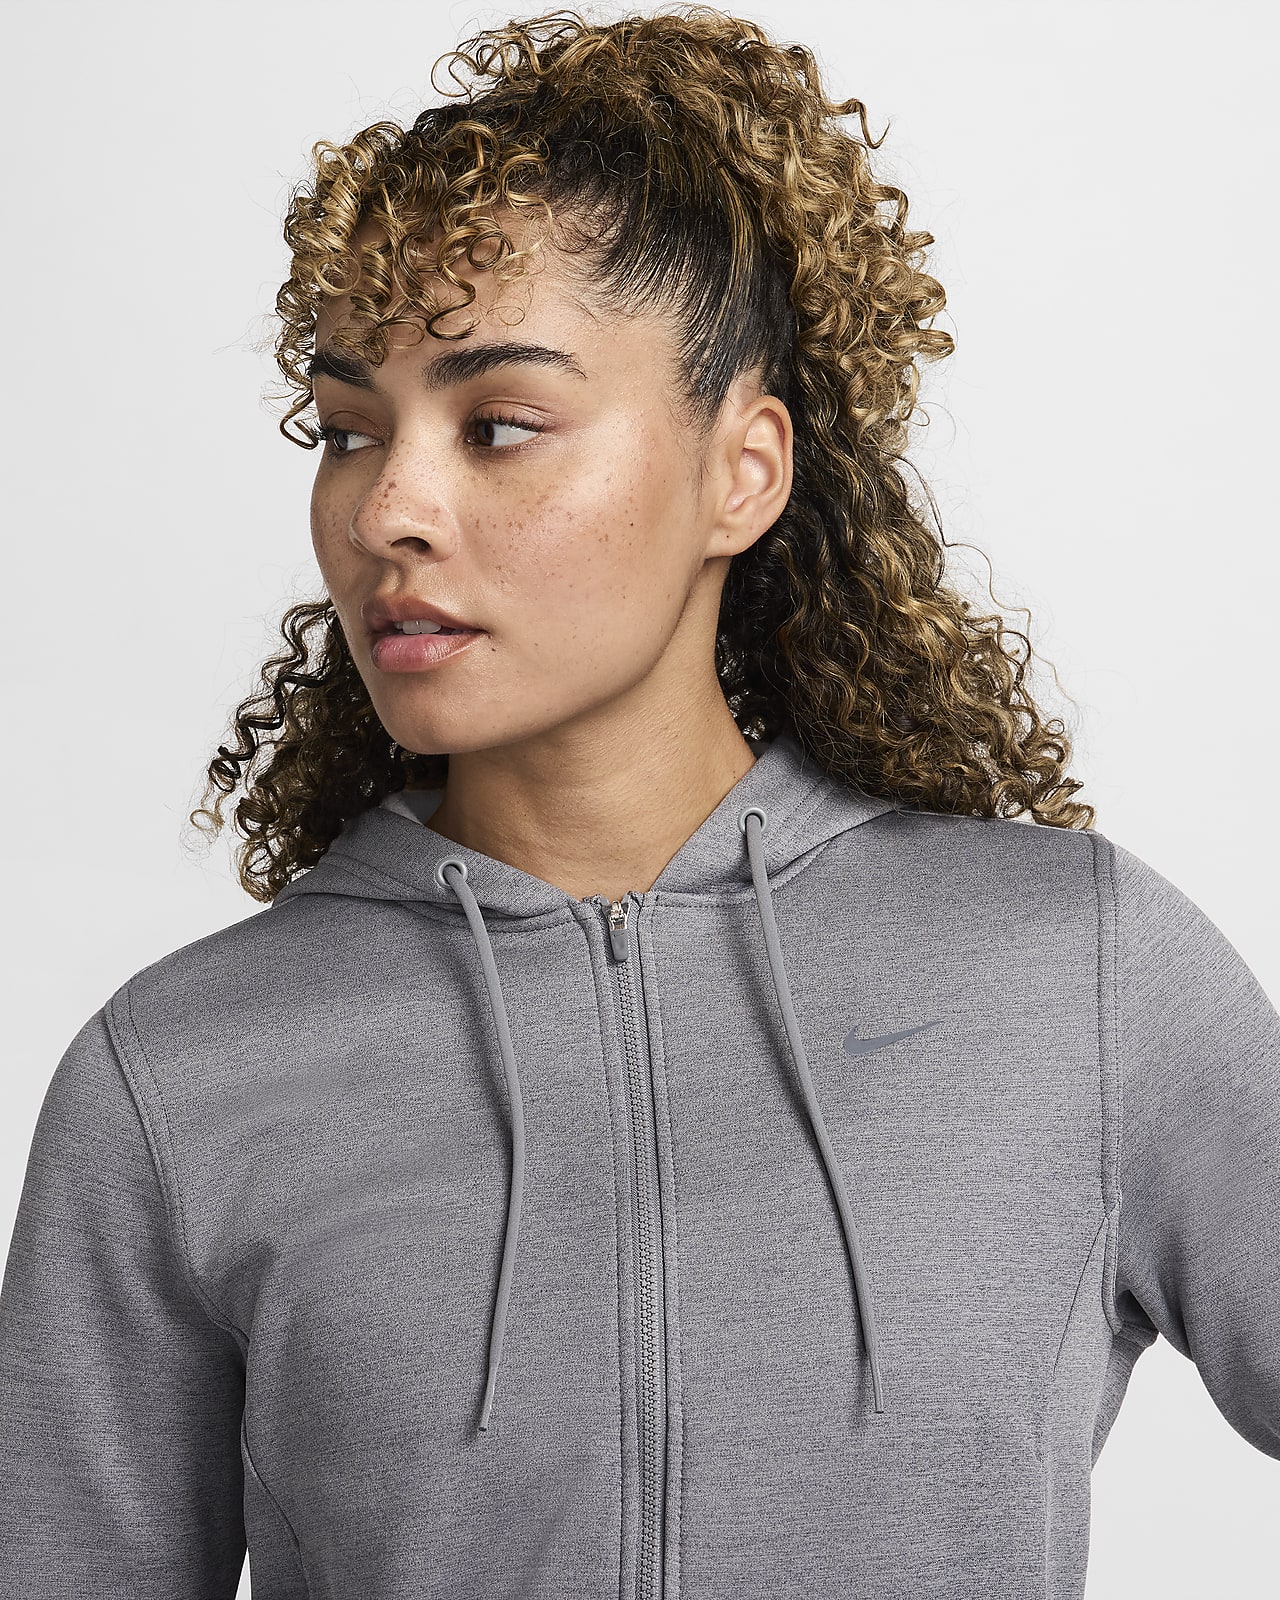 Nike Therma-FIT One Women\'s Full-Zip Hoodie.